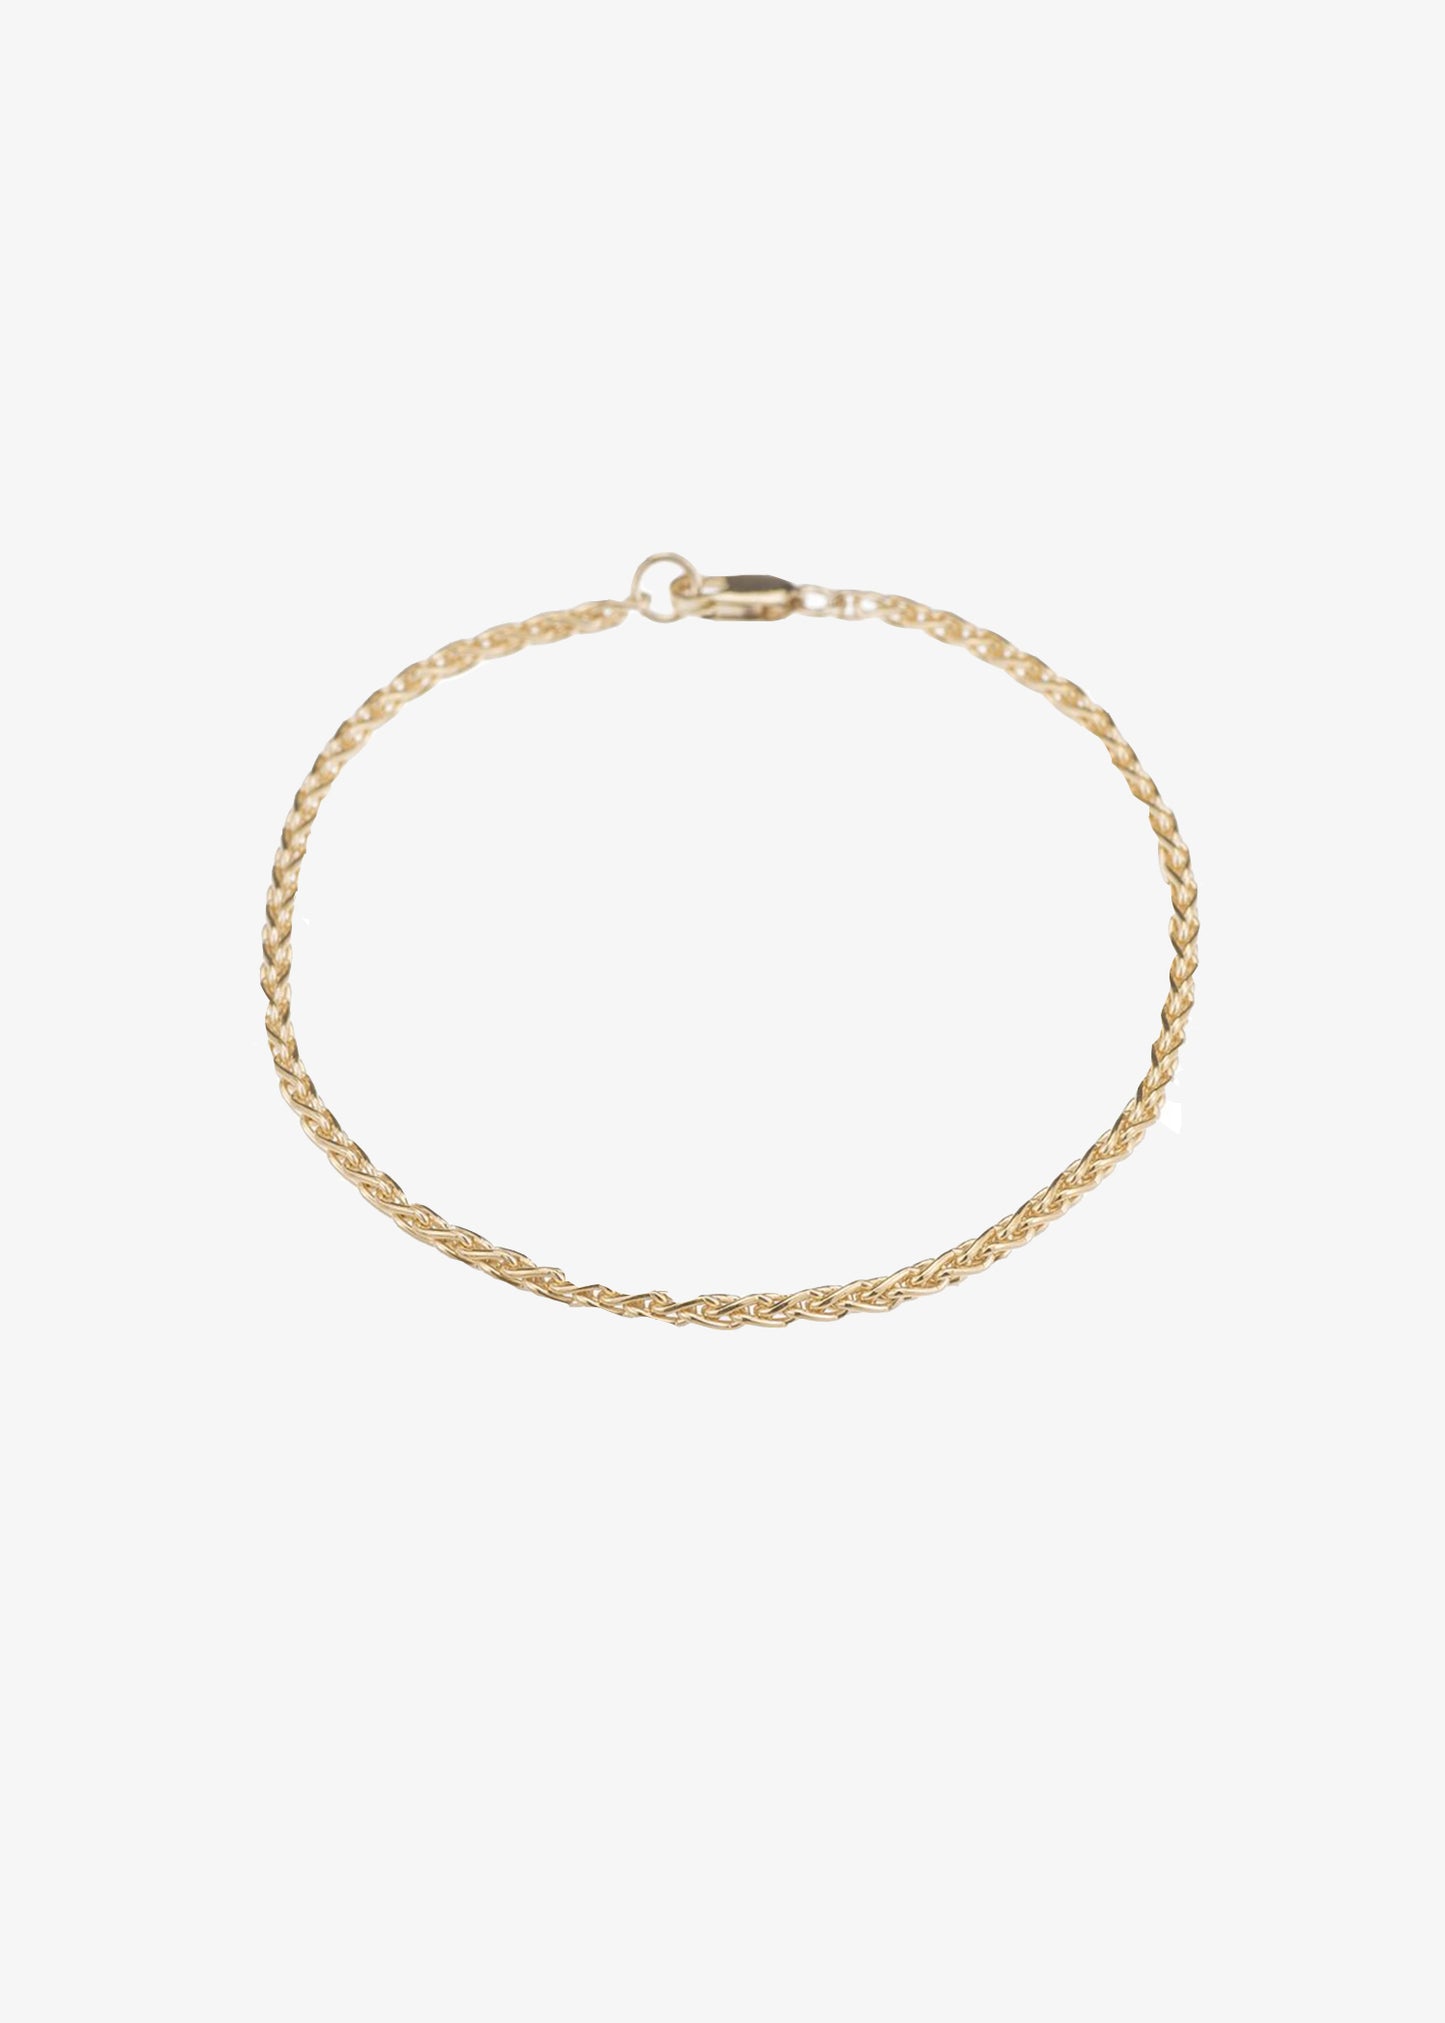 mara-siena-chain-bracelet-14k-gold-filled | Jewelry | Mara Carrizo Scalise